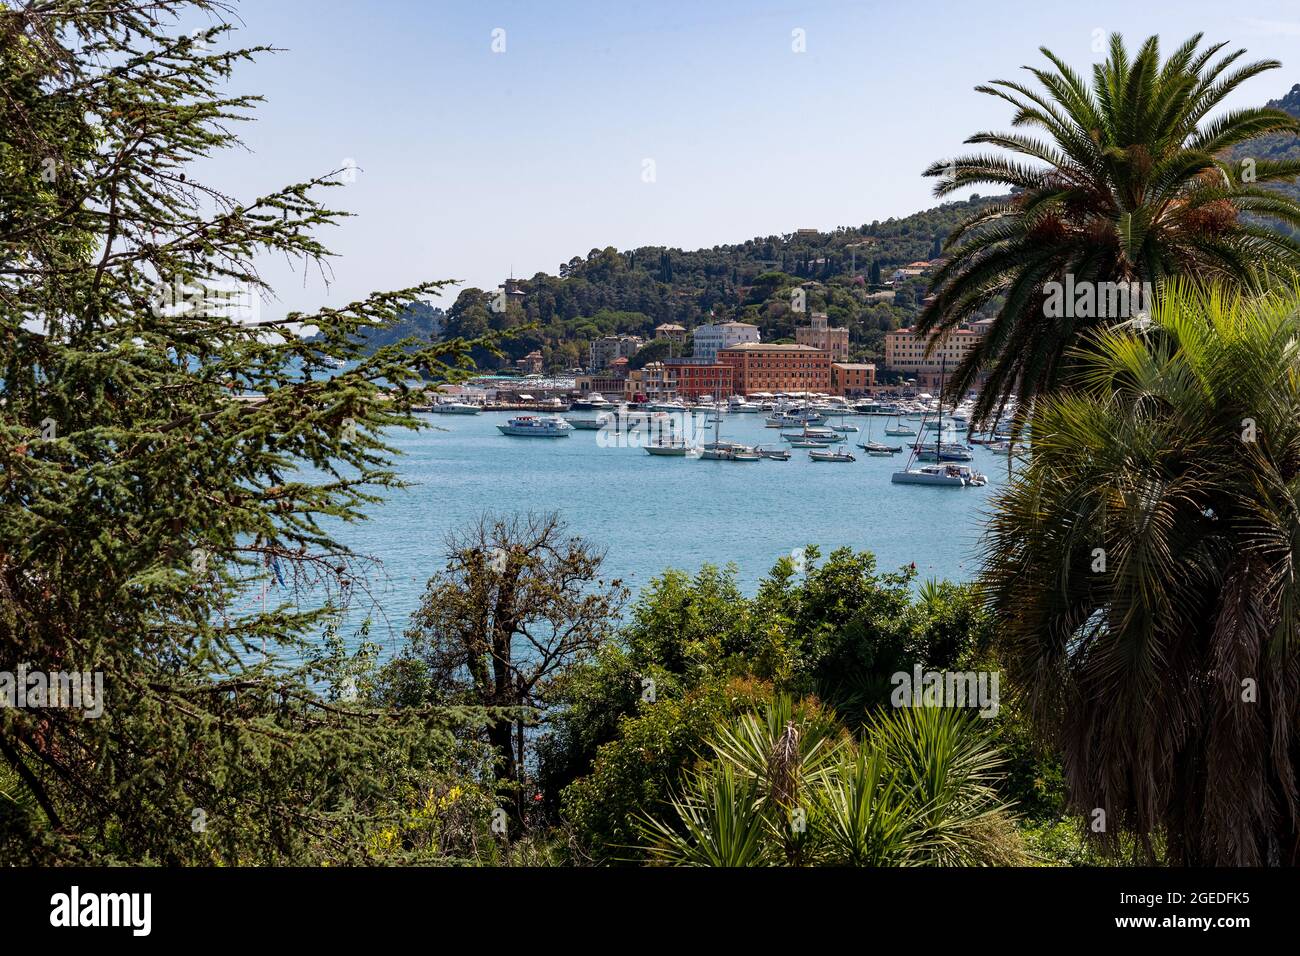 Blick über Palem auf den Hafen und die Häuser drum herum. Touristen strömen  am 19. August 2021 in die wunderschöne Stadt Santa Margherita im Levante  Teil Liguriens. Santa Margherita und Ligurien bestechen